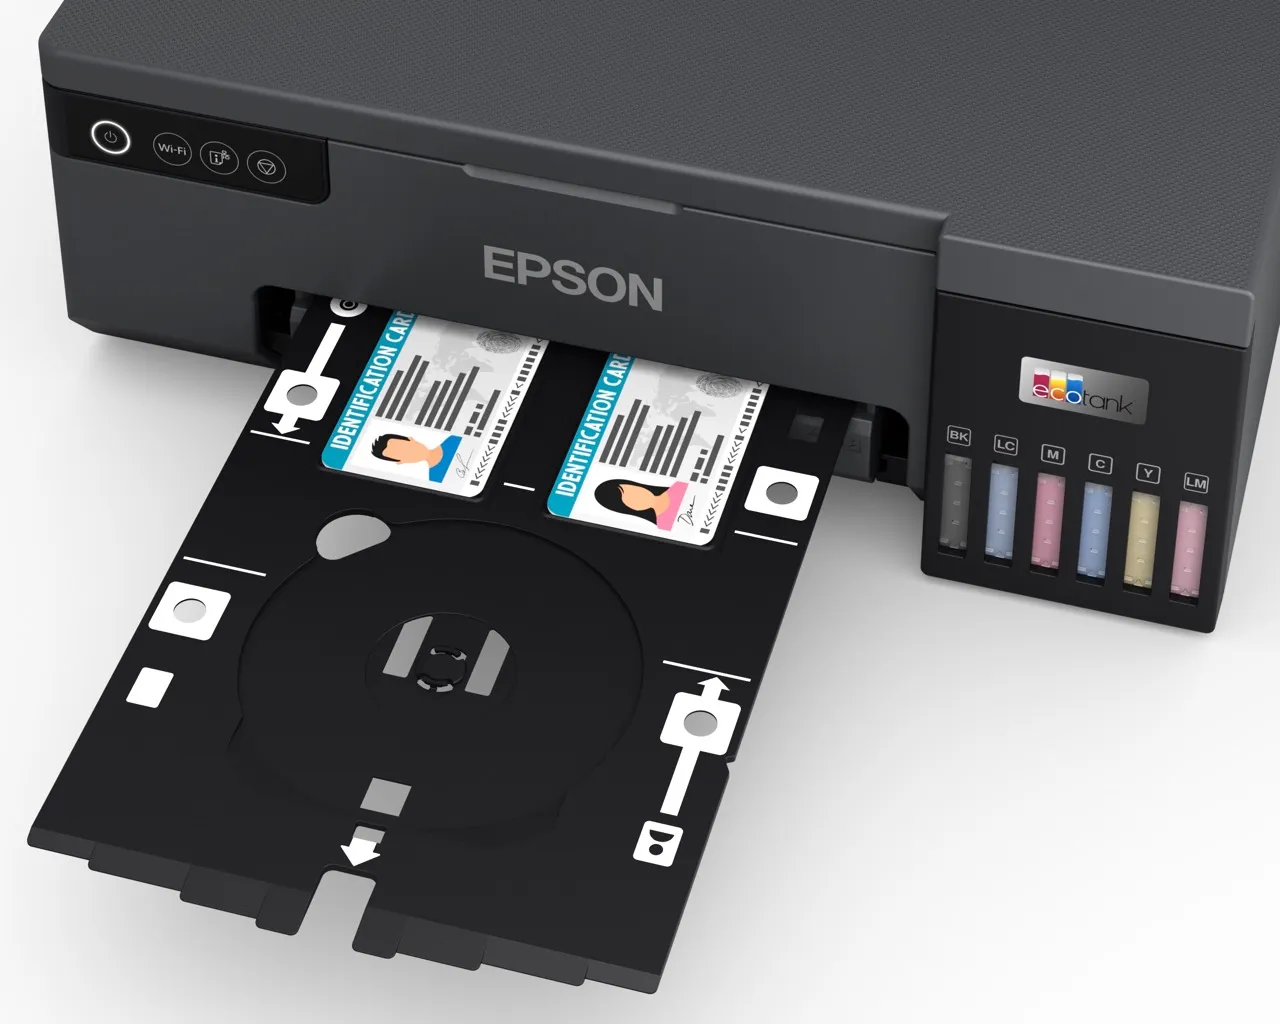 Nâng cao hiệu suất cùng dòng máy in ảnh đa năng Epson L8050 khổ A4 và L18050 khổ A3+ WiFi cải tiến